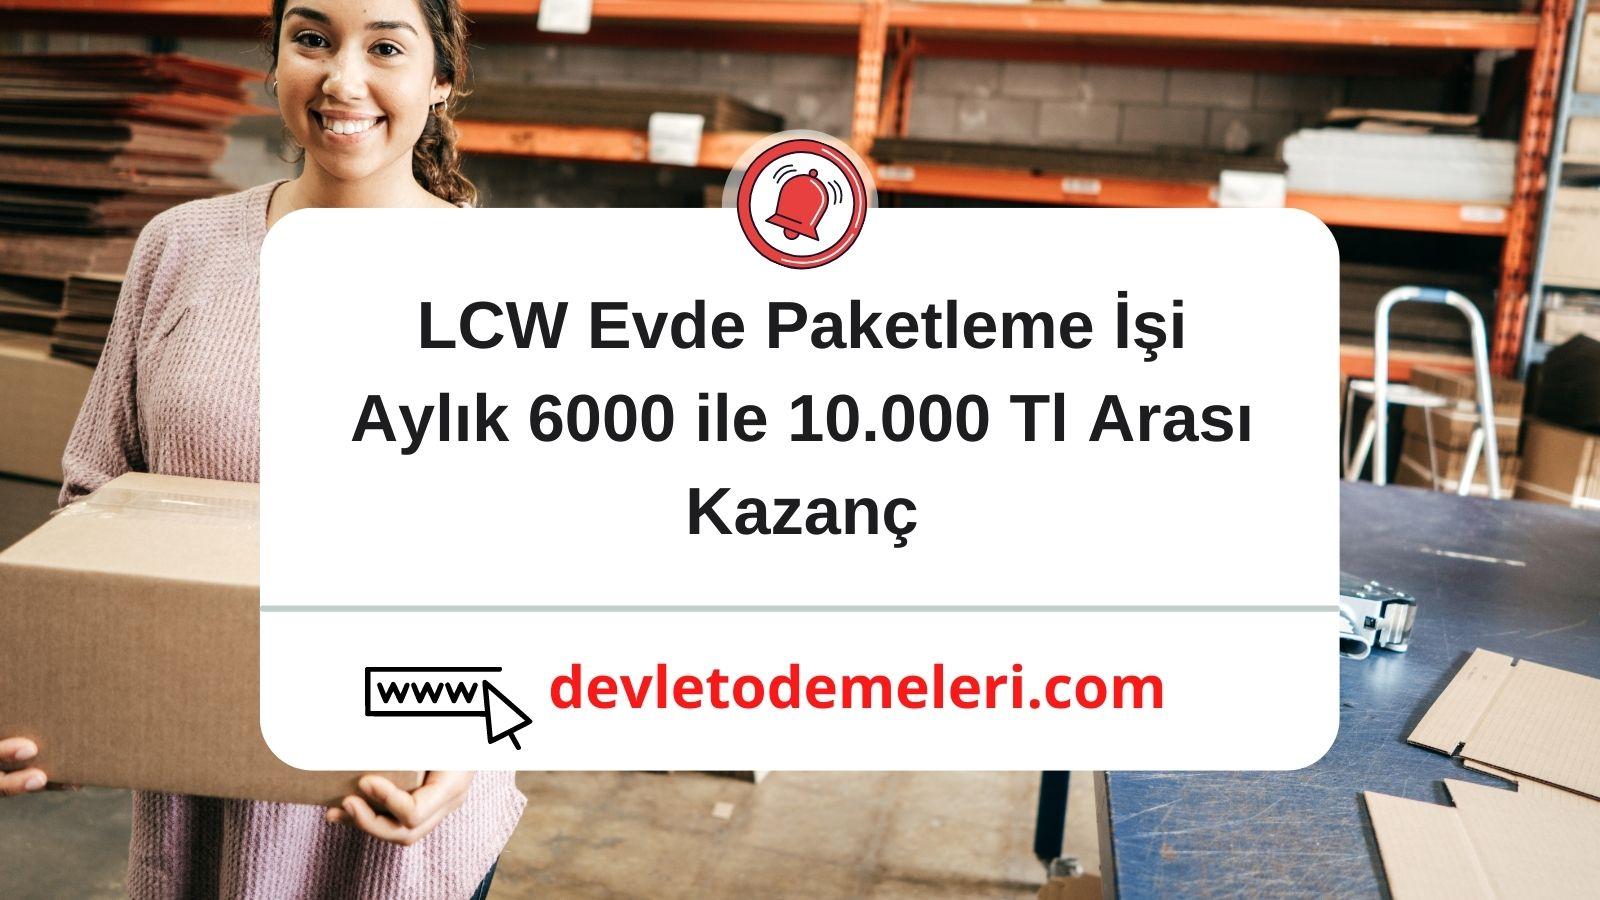 LCW Evde Paketleme İşi Aylık 6000 ile 10.000 Tl Arası Kazanç